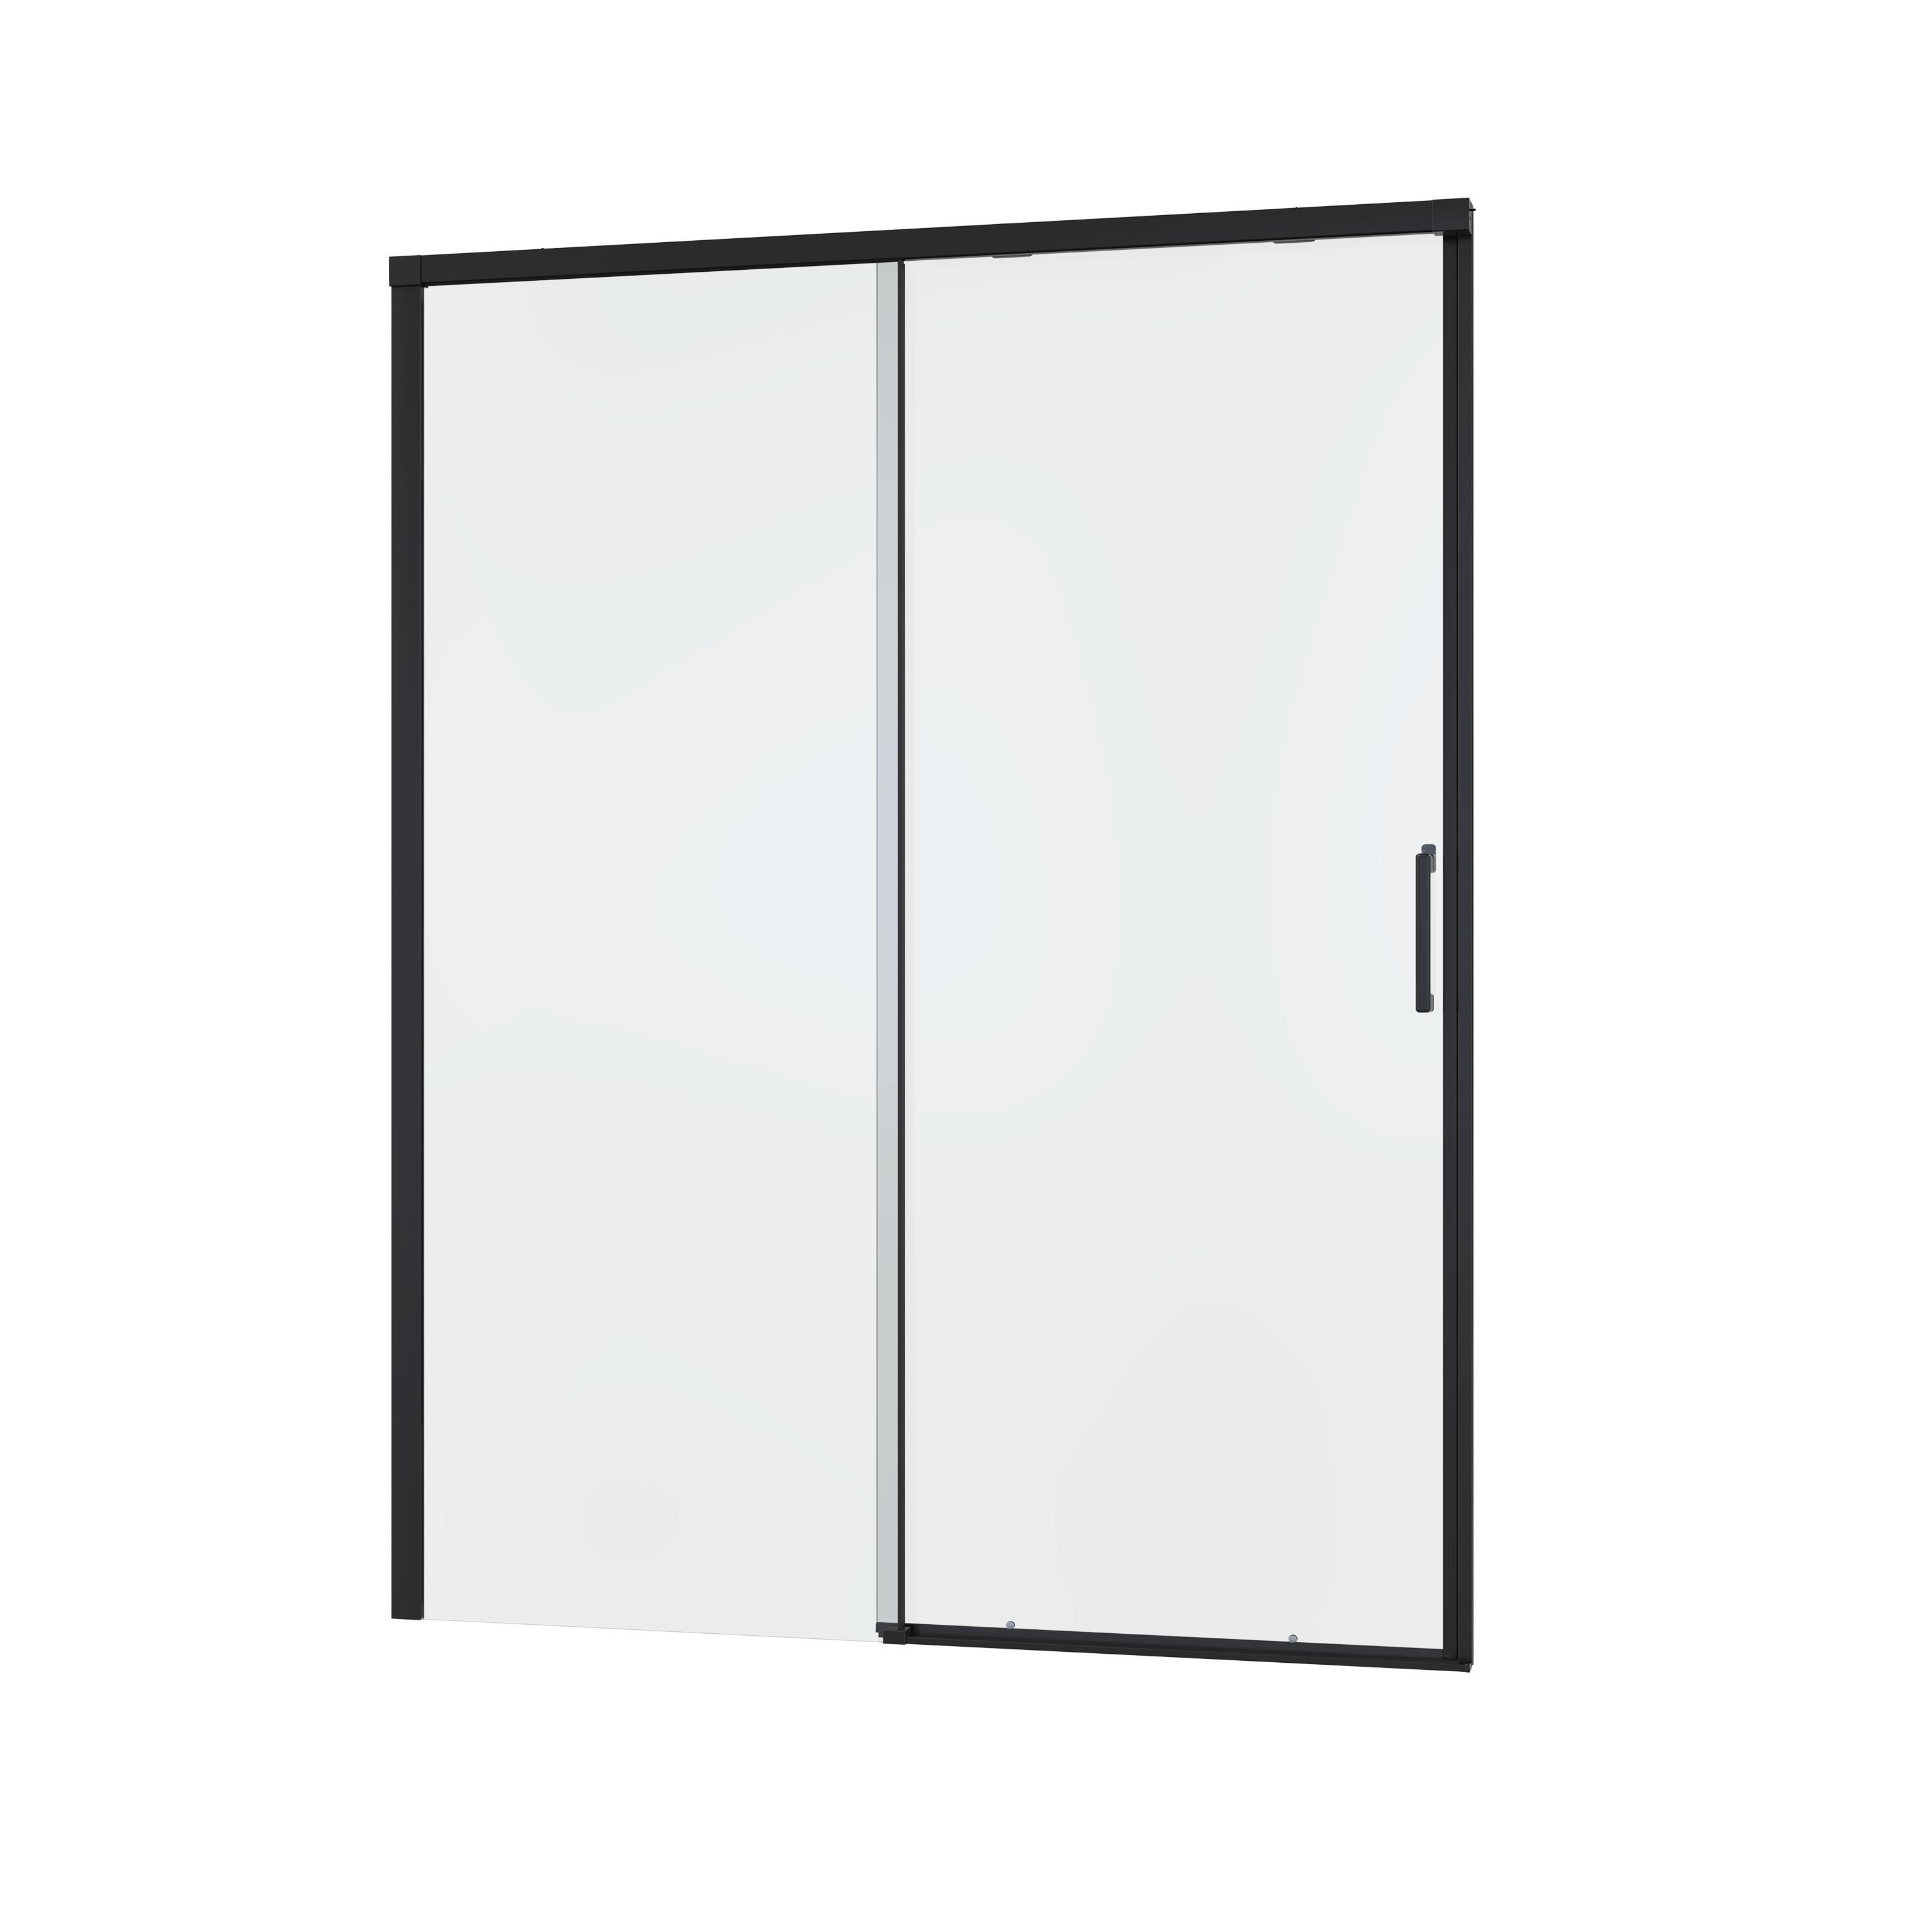 Porta doccia 1 anta fissa + 1 anta scorrevole Remix 160 cm, H 195 cm in vetro, spessore 8 mm trasparente nero - 3